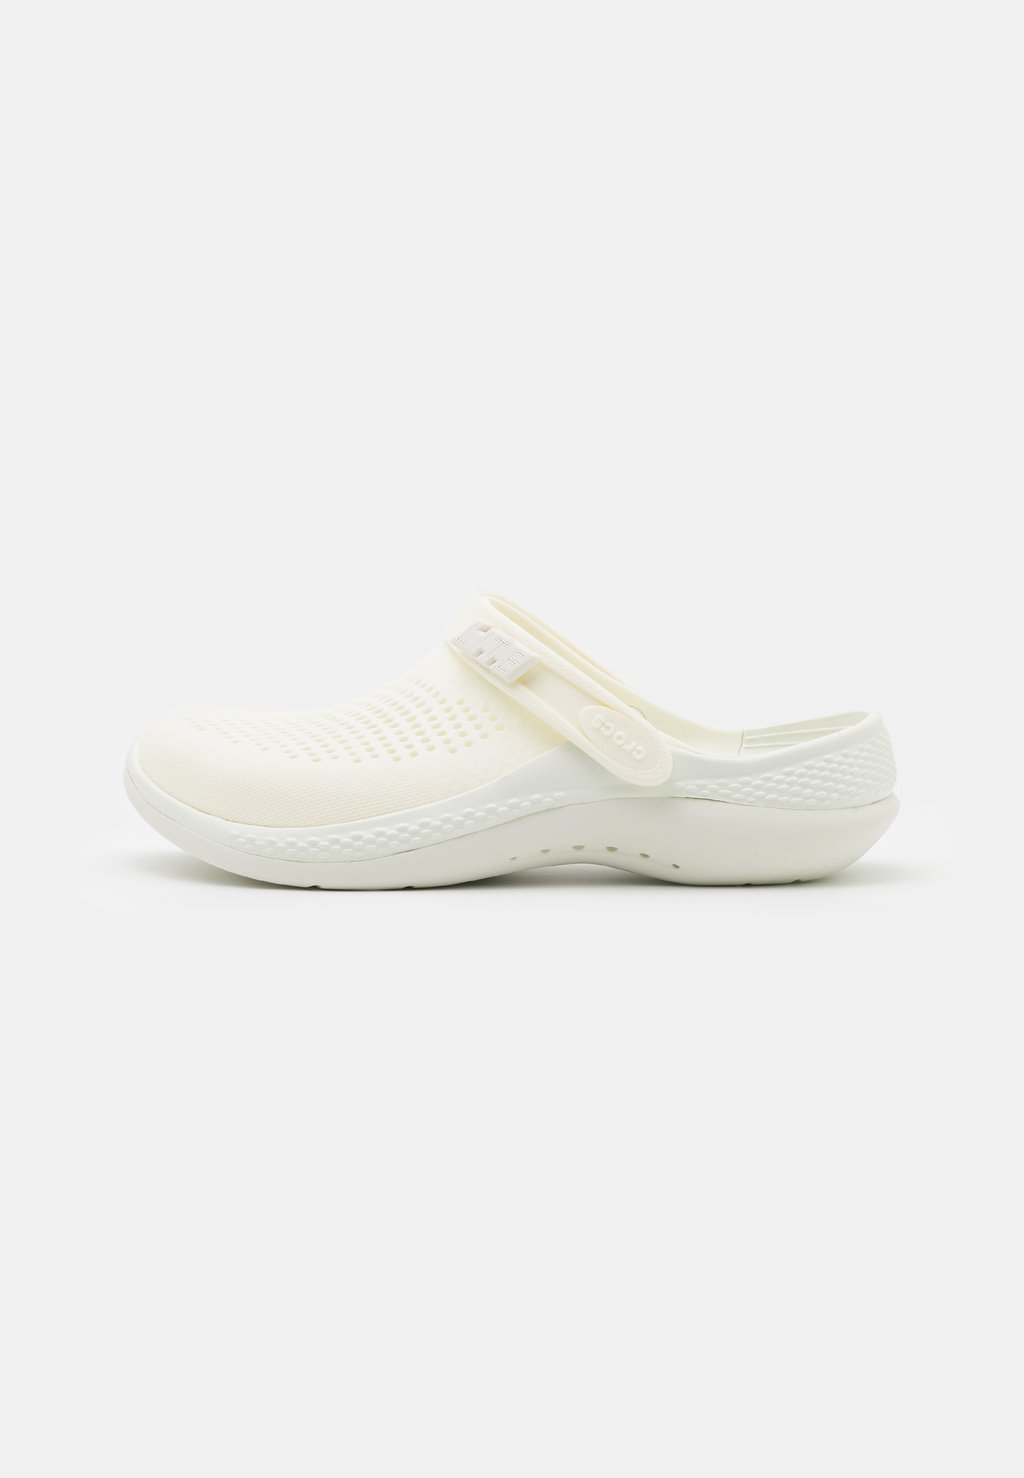 Сабо LITERIDE 360 UNISEX Crocs, цвет almost white/almost white сандалии crocs literide stretch sandal цвет neo mint almost white